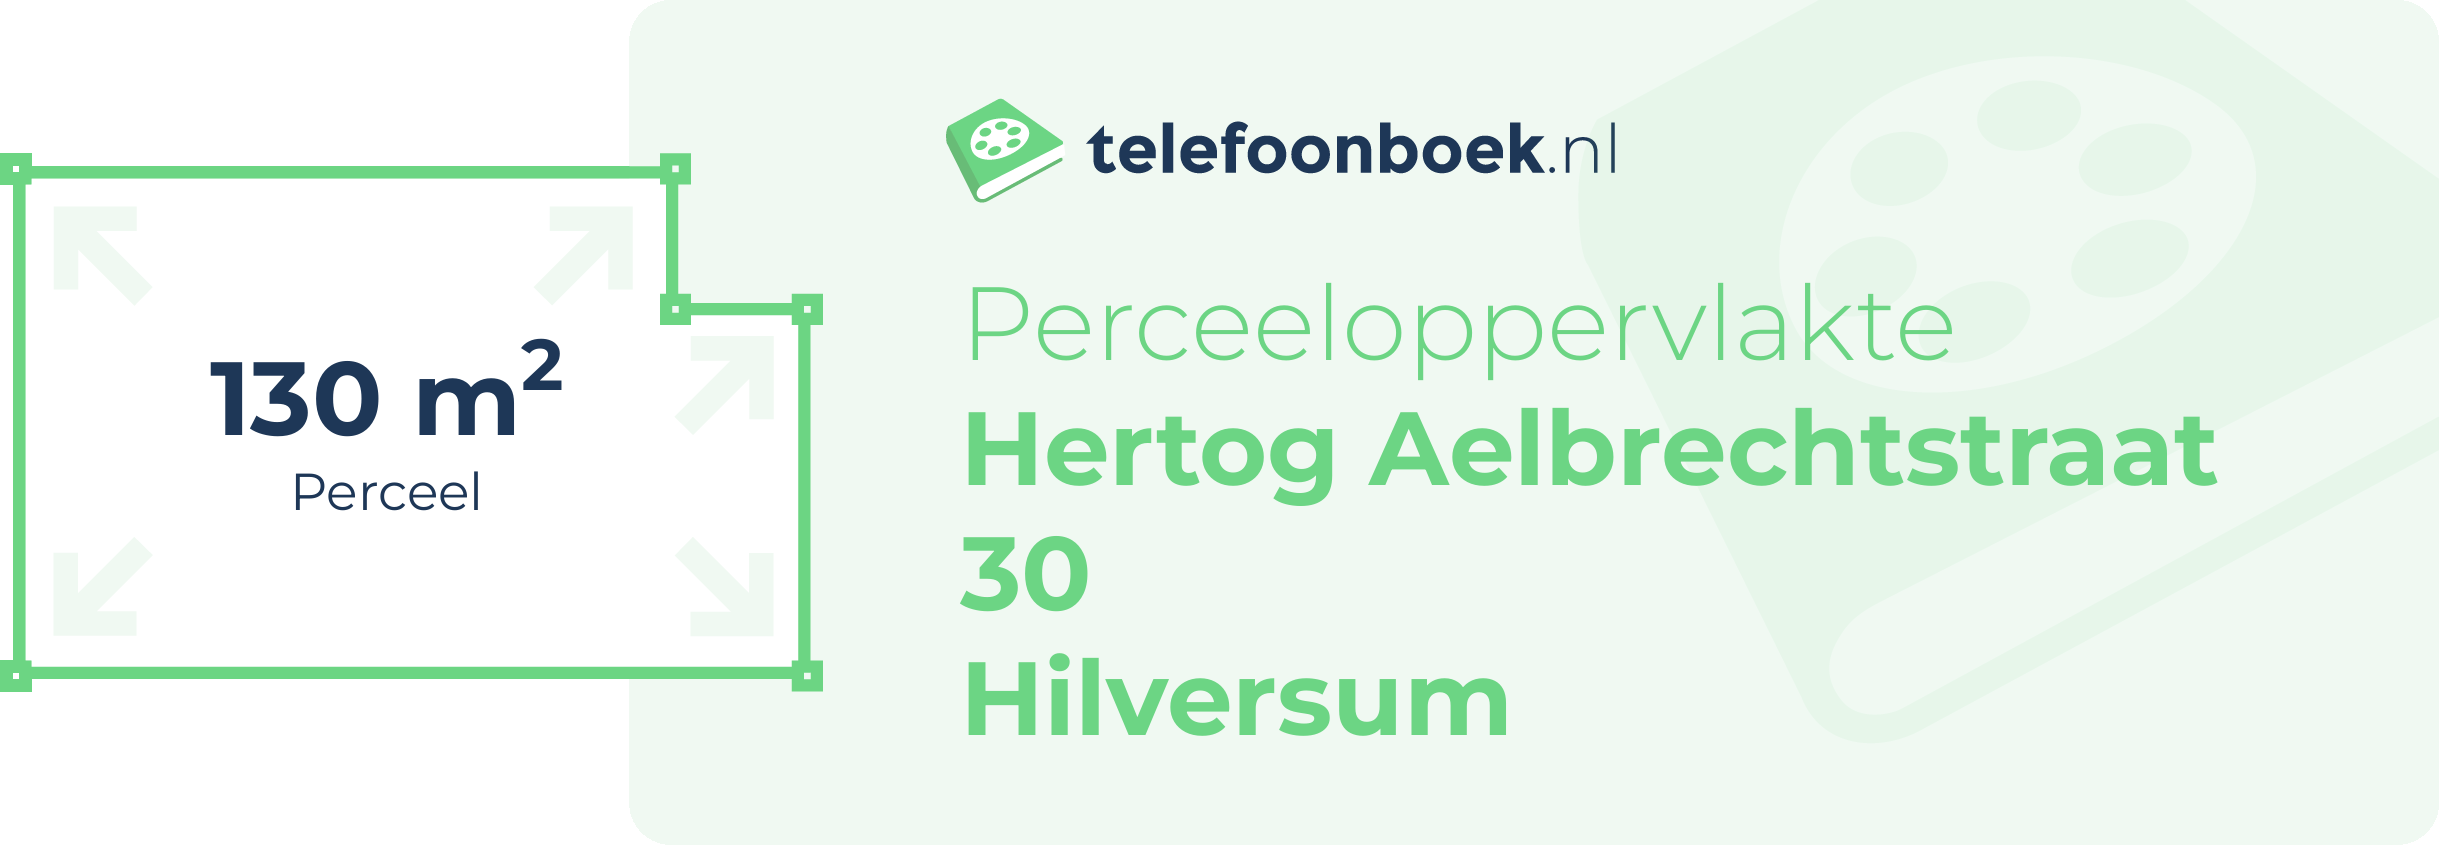 Perceeloppervlakte Hertog Aelbrechtstraat 30 Hilversum